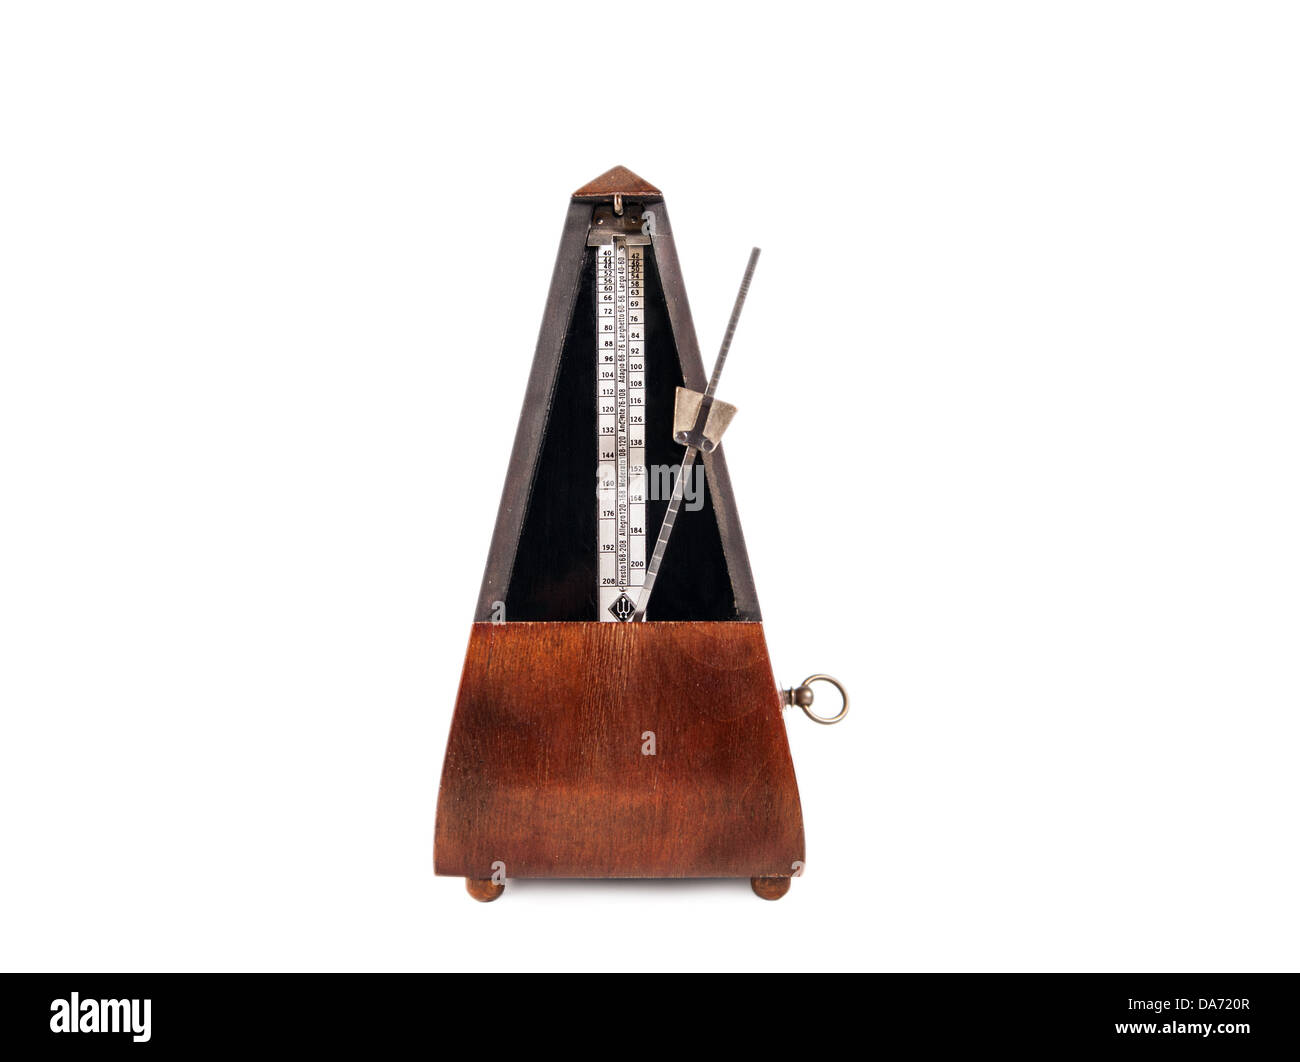 En bois Vintage musique metronome timer sur le fond blanc Banque D'Images